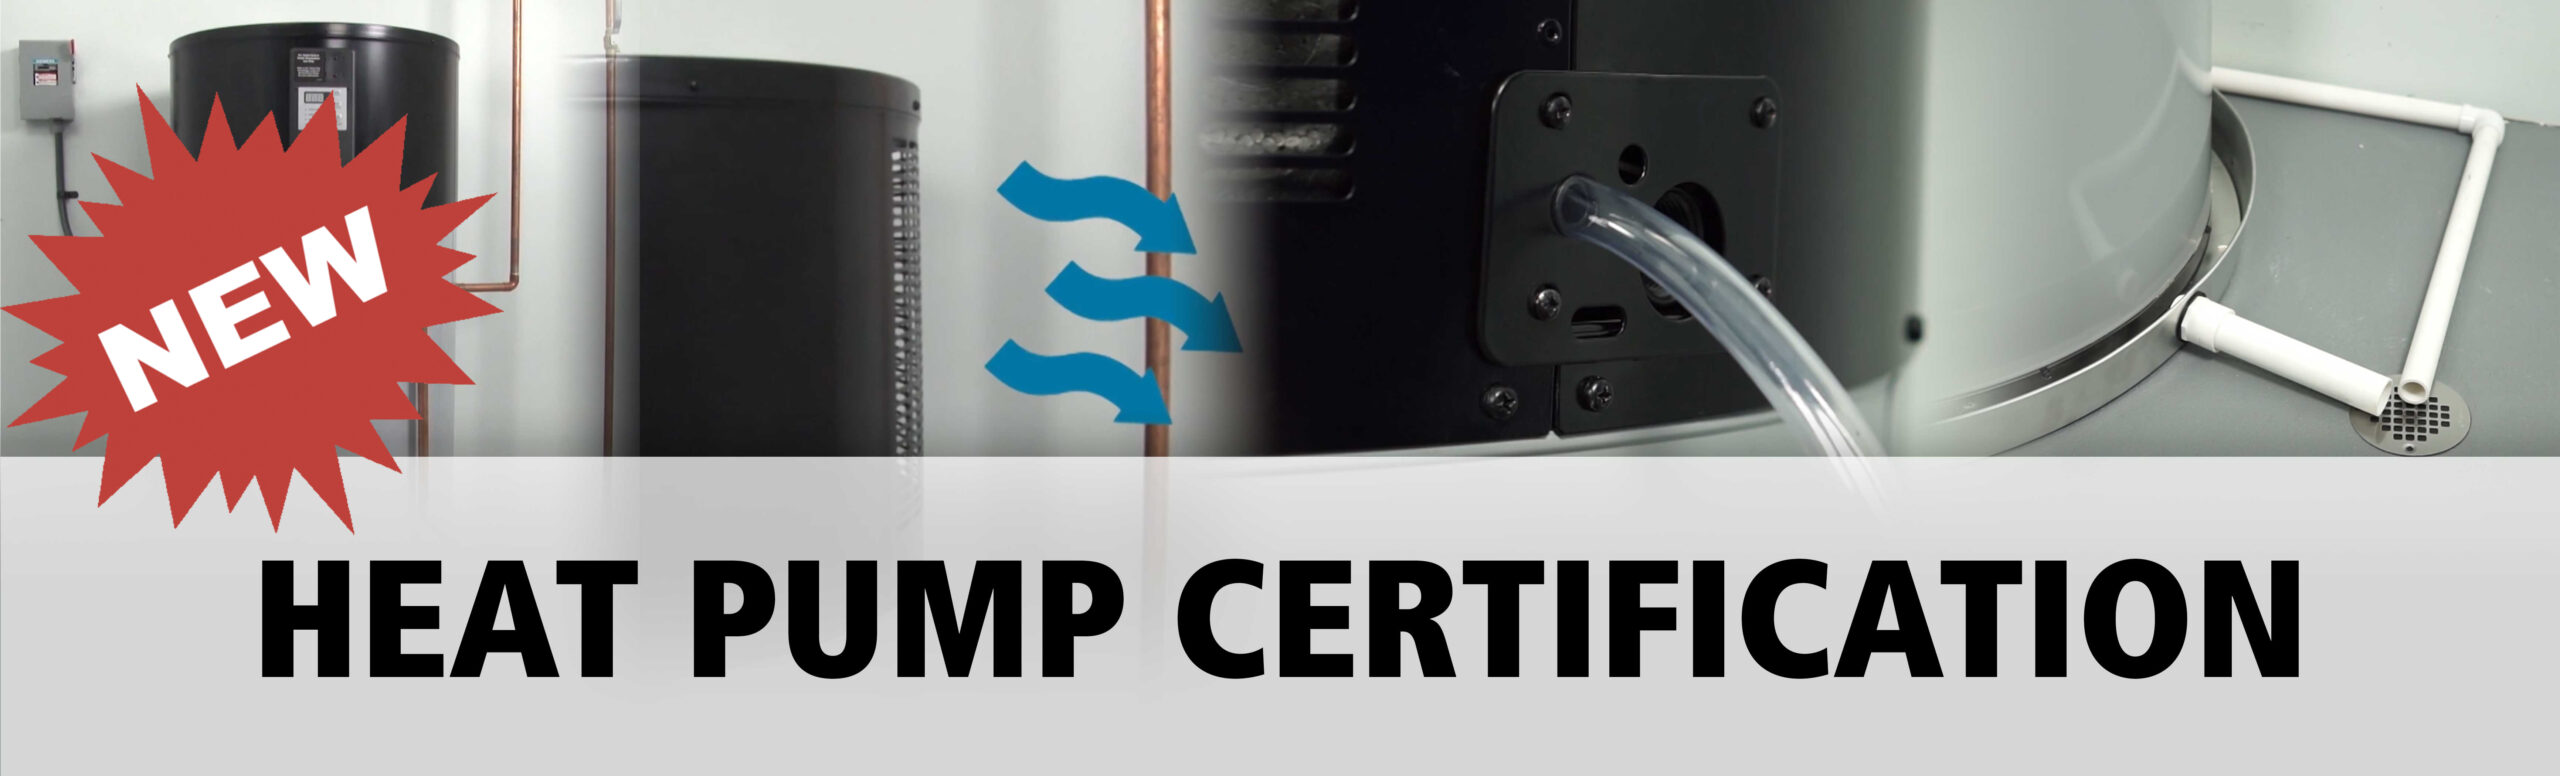 Online-Certification-Banner Heat Pump Certification TECH_Clean_California